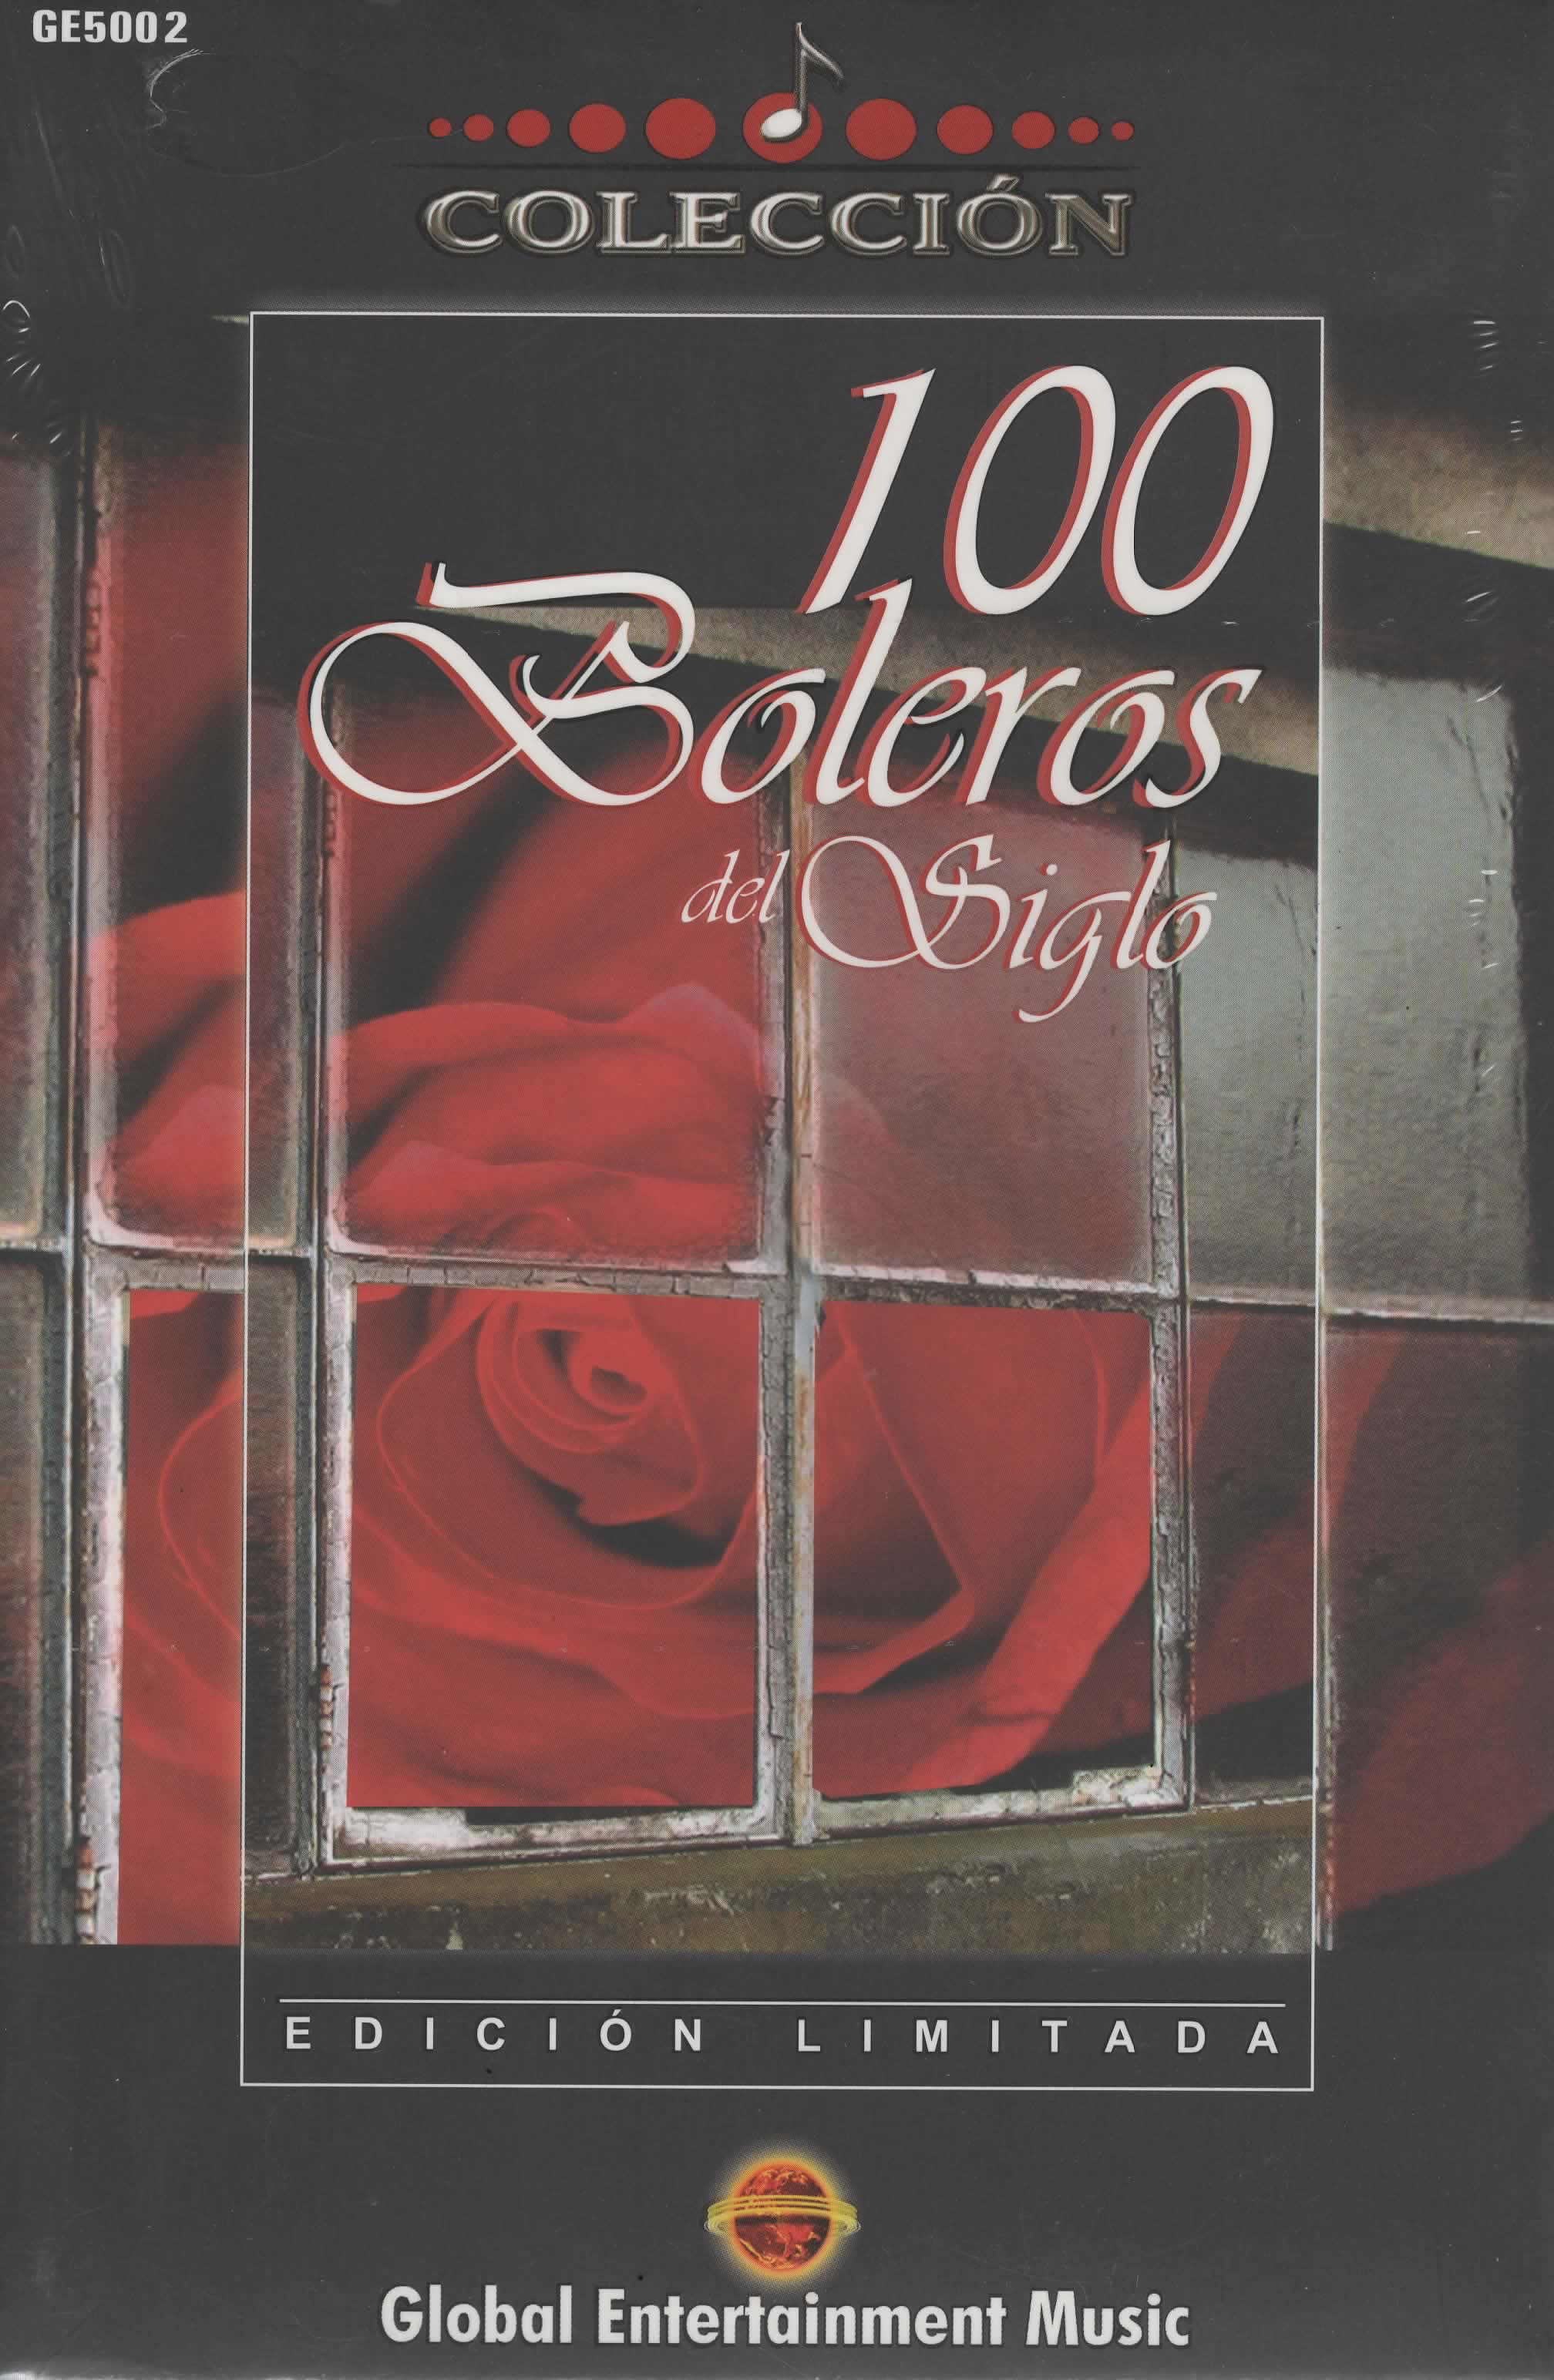 CD x 5 Colección 100 boleros del siglo